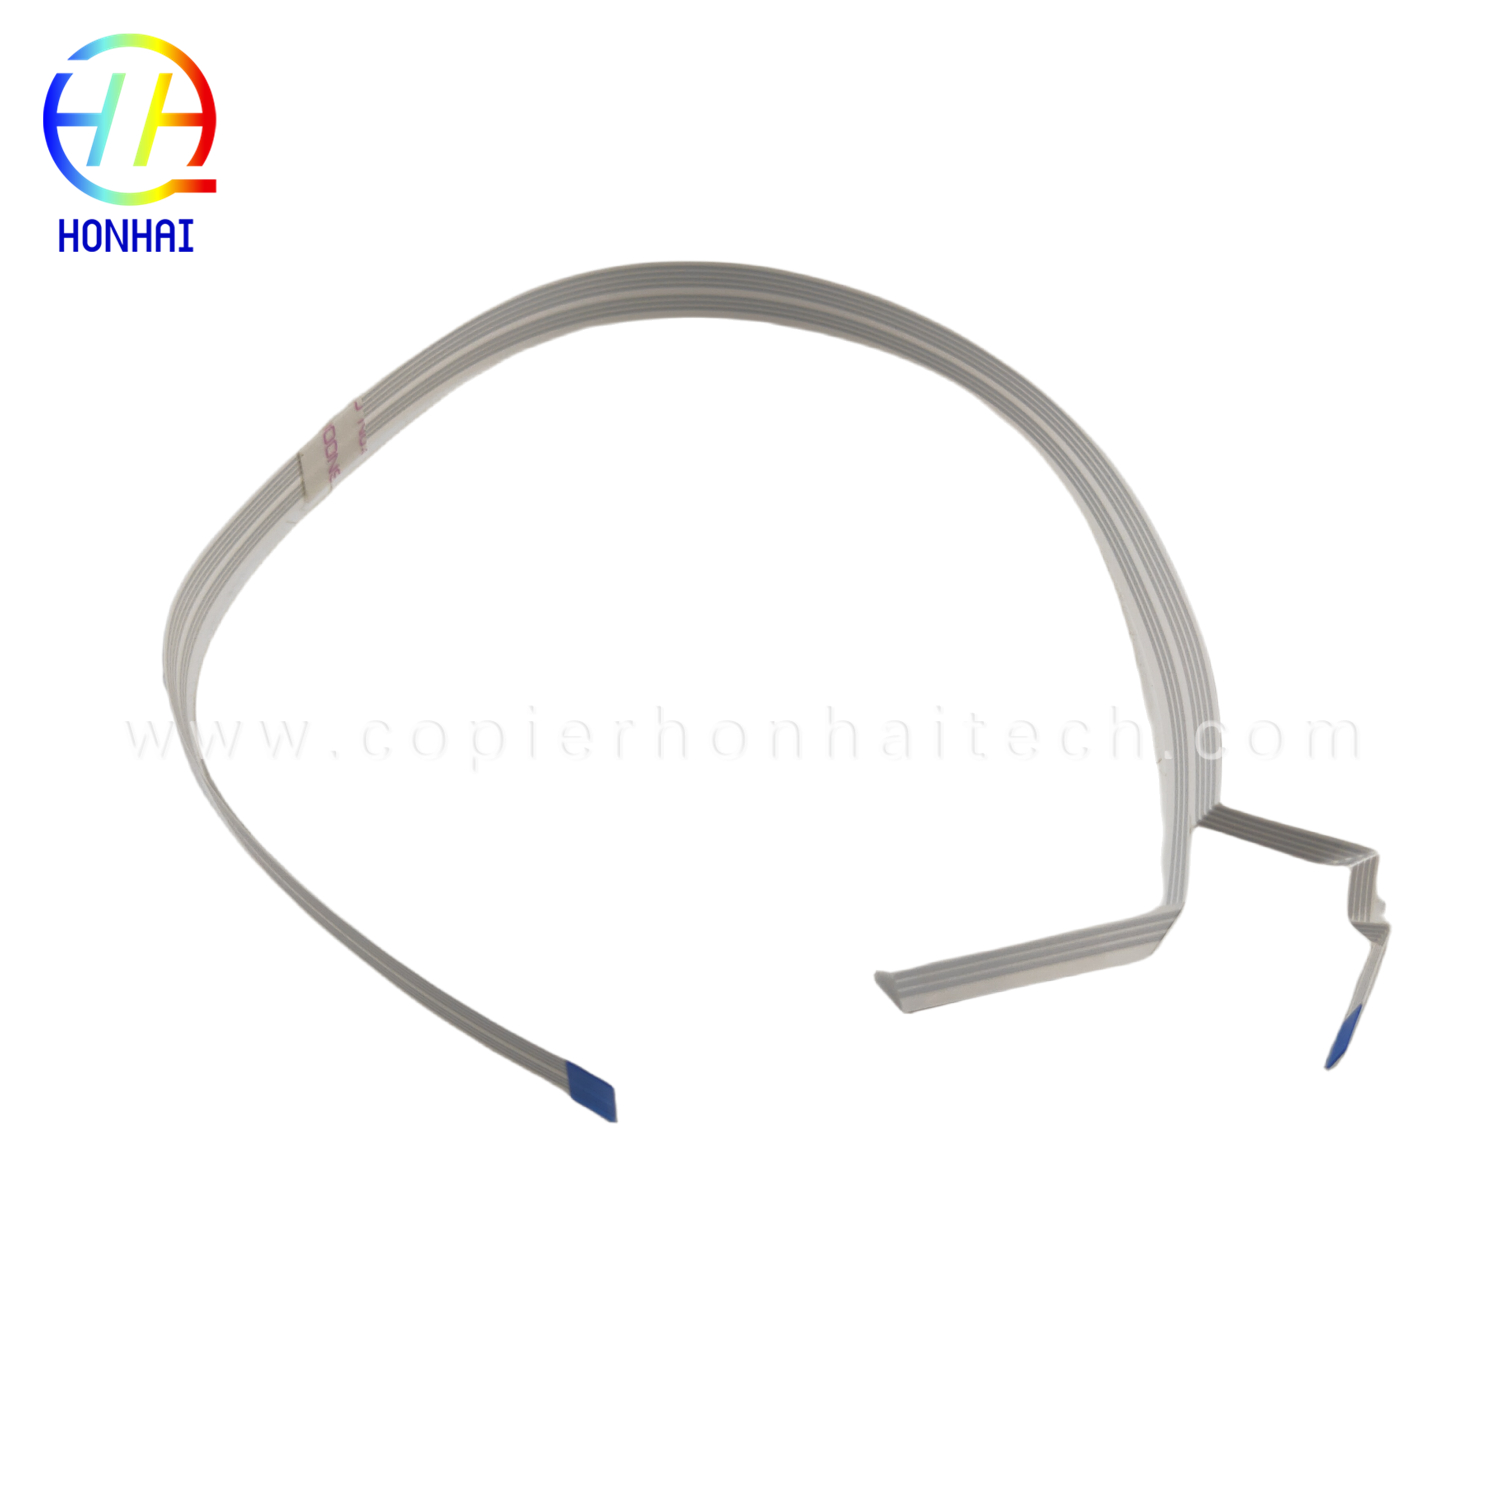 Sensor Cable għal Epson L455 L565 L380